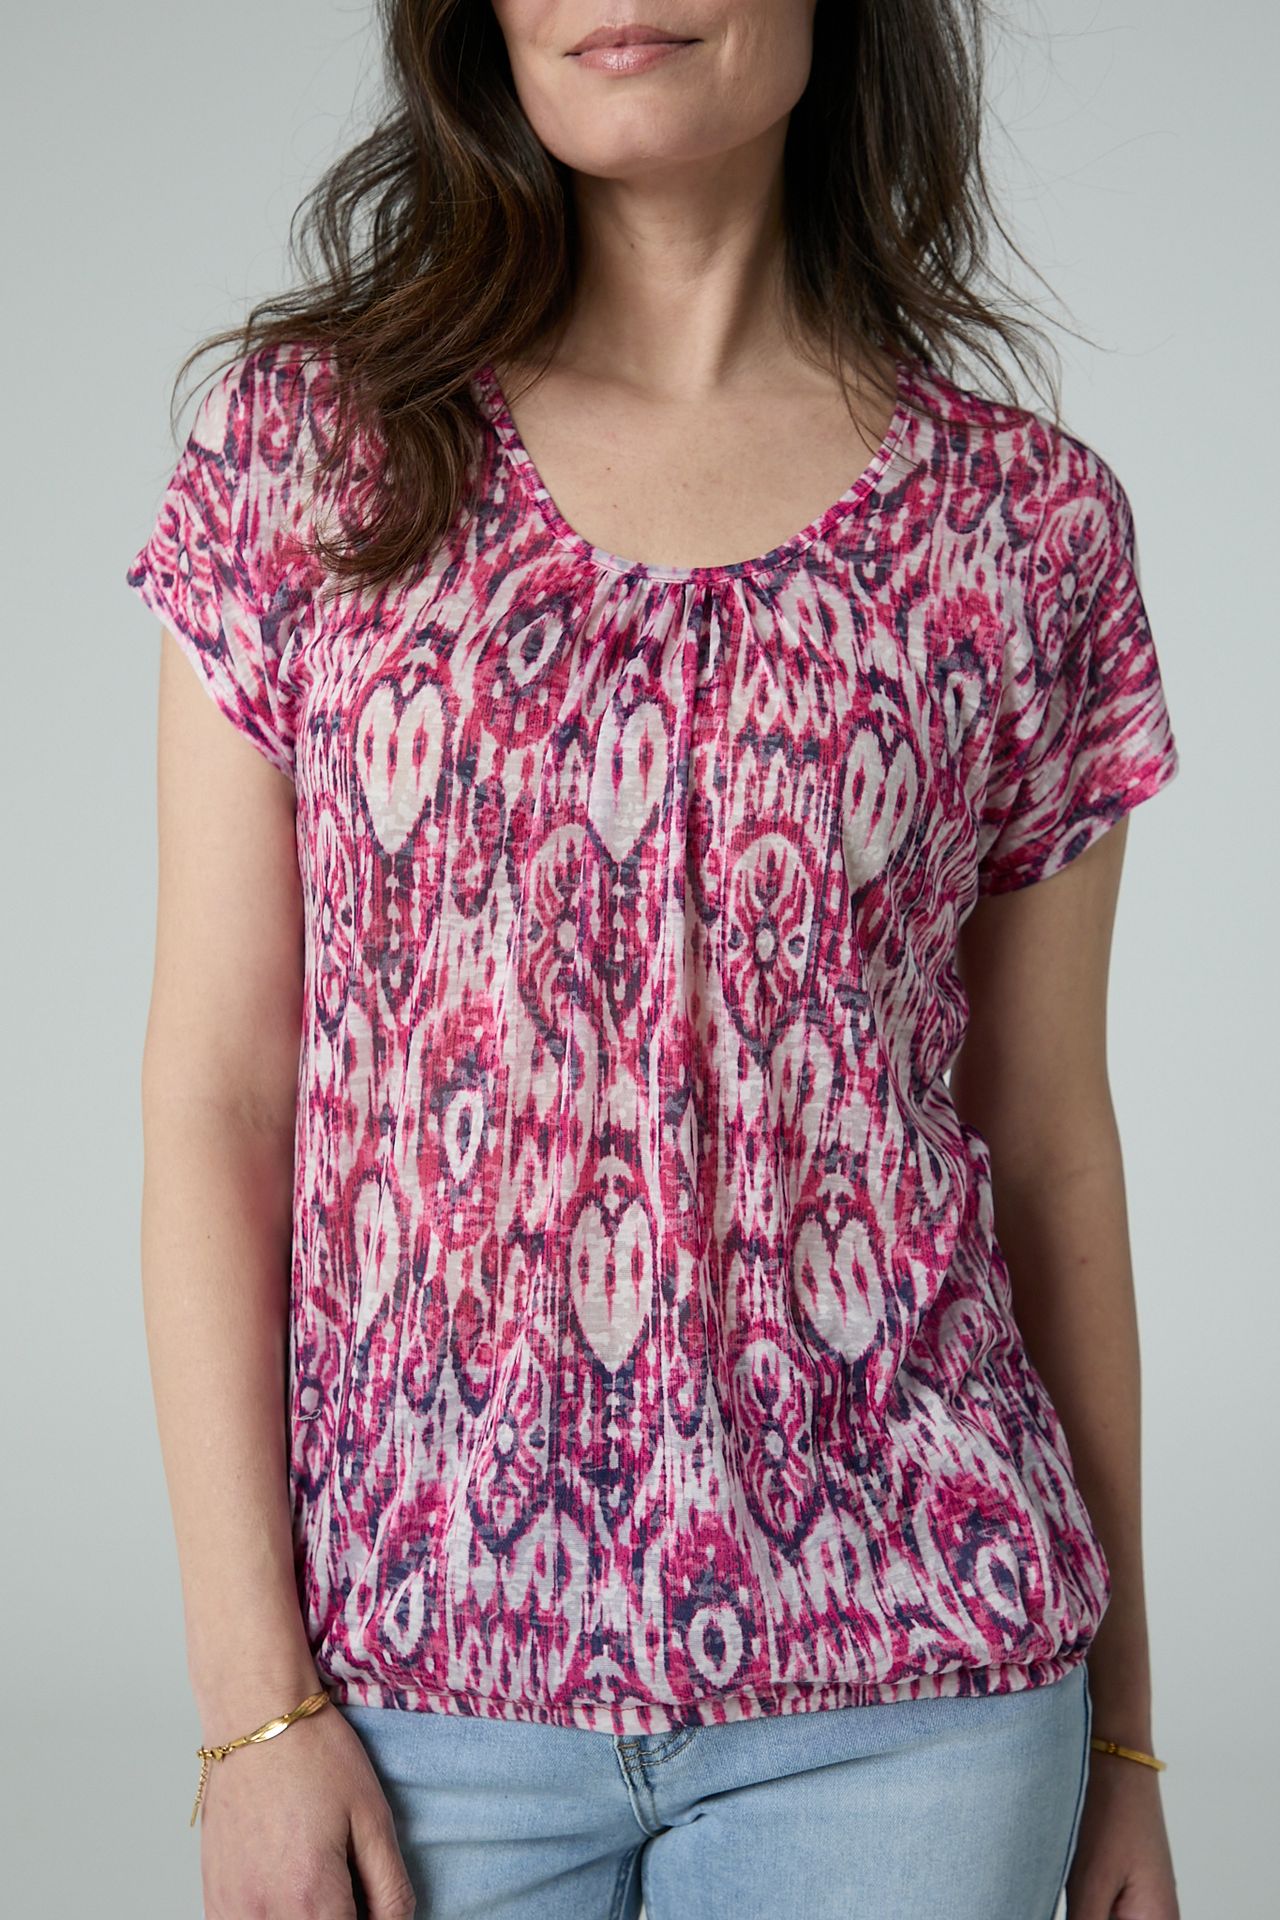 Norah Roze shirt pink/white 213801-931